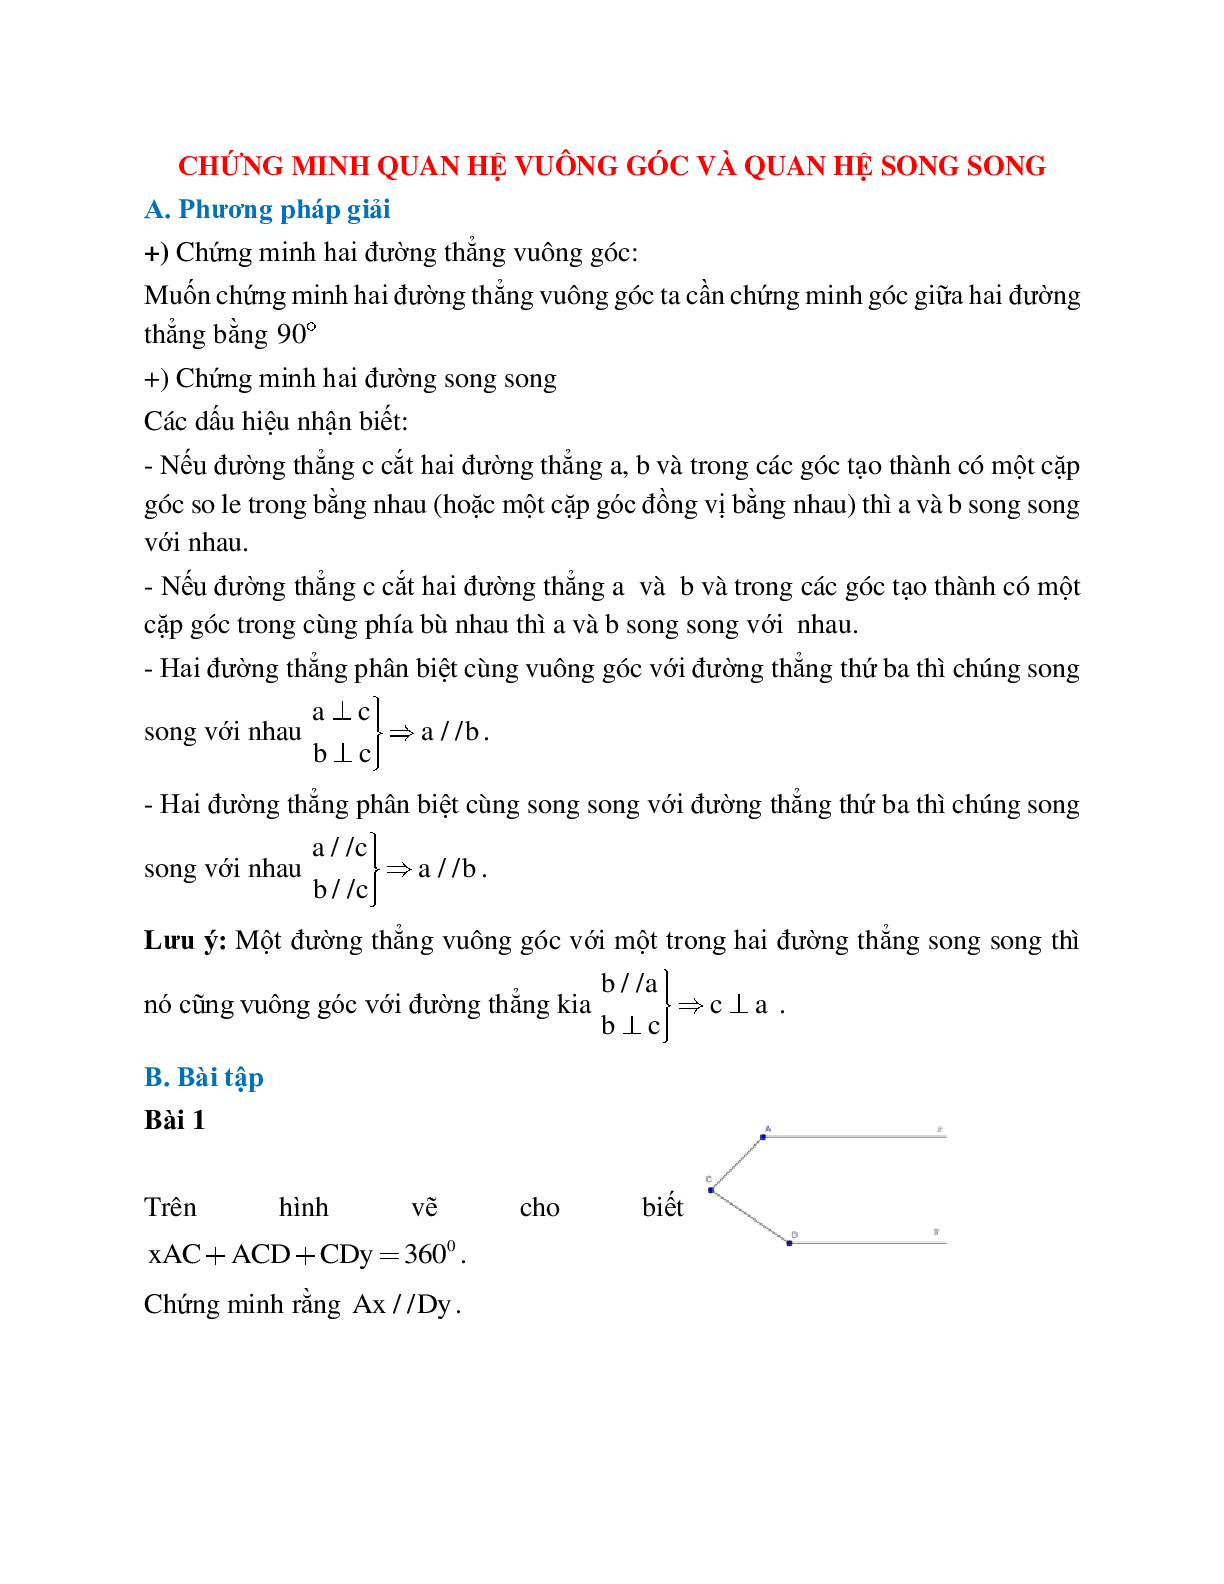 Lý thuyết, bài tập về Chứng minh quan hệ vuông góc - Quan hệ song song chọn lọc (trang 1)